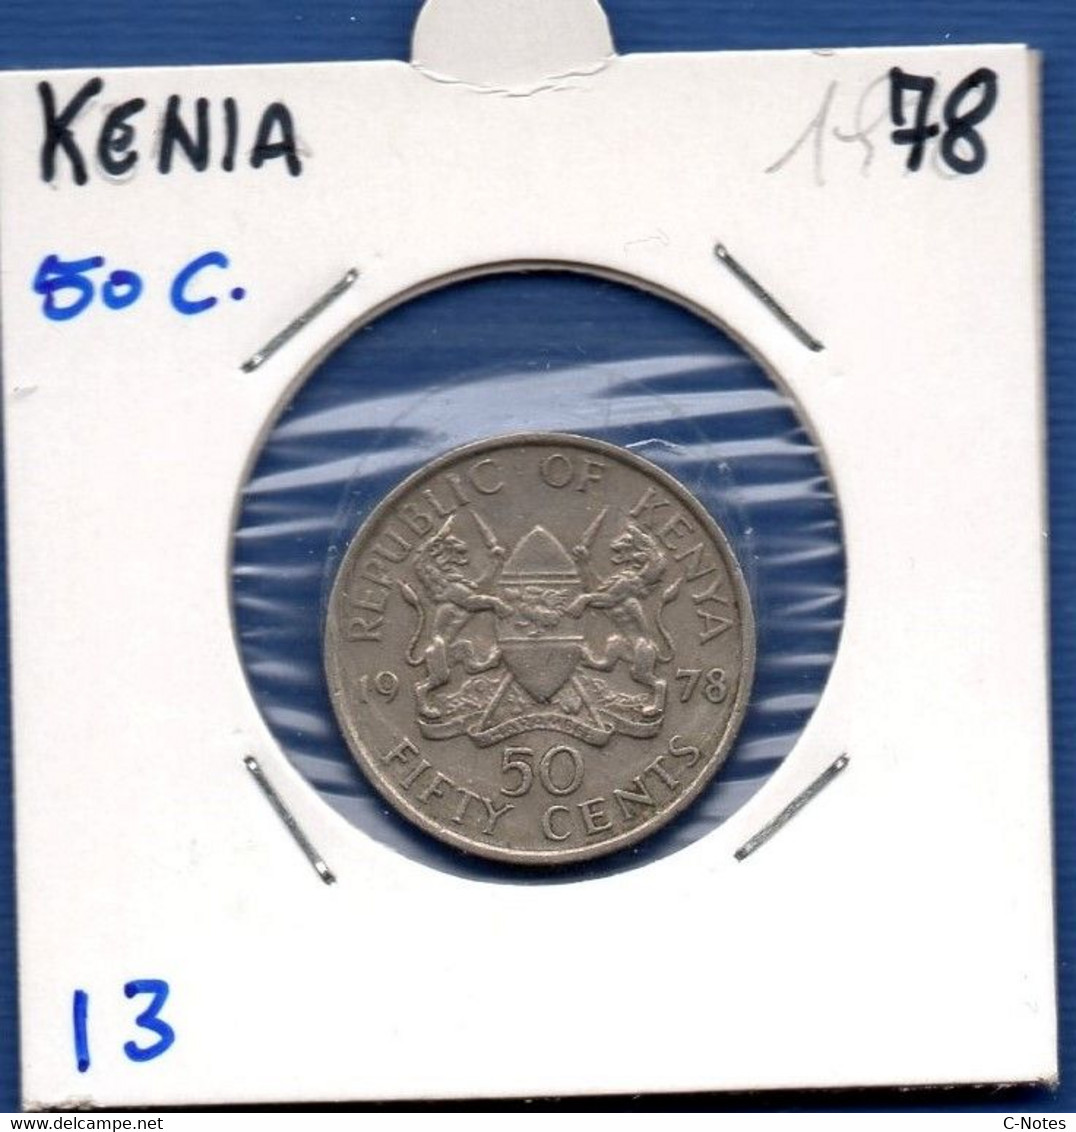 KENYA - 50 Cents 1978 -  See Photos -  Km 13 - Kenya